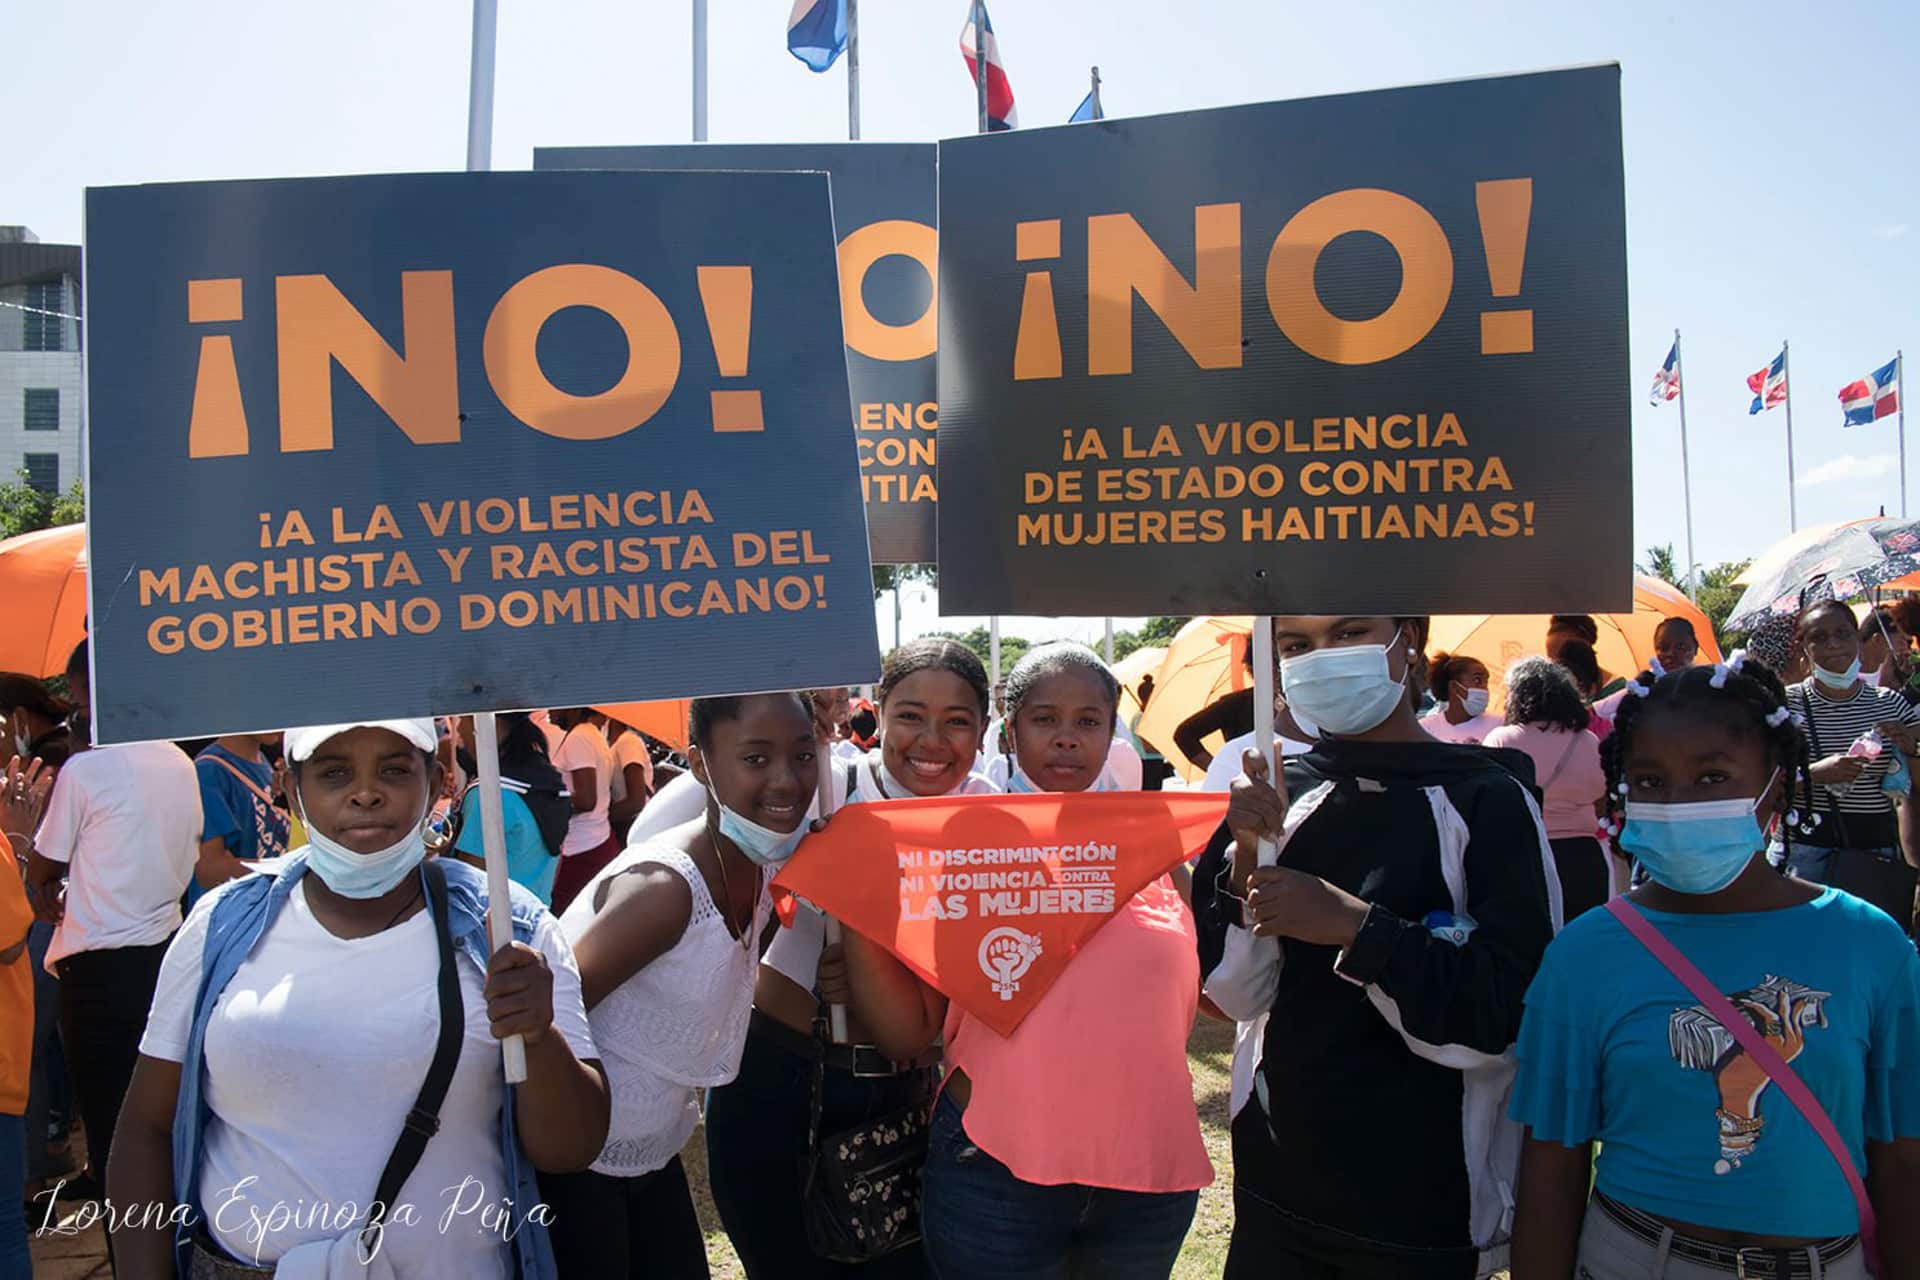 En République Dominicaine, des militantes de MUDHA et d'autres mouvements féministes participent à une mobilisation contre les violences faites aux femmes. "Non à la violence machiste et raciste du gouvernement dominicain !", réclament-elles. © Lorena Espinoza Pena.